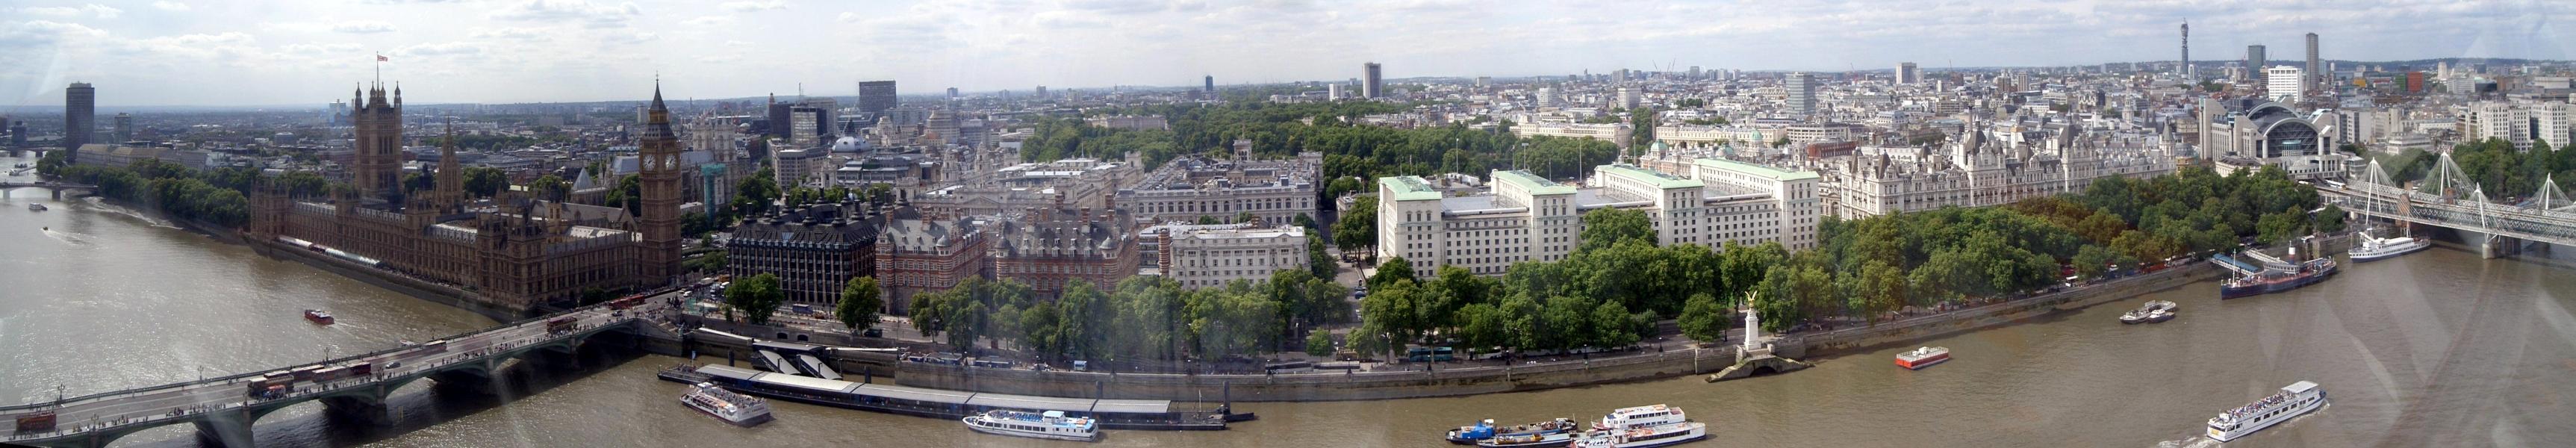 Panorama von London. 8 Mio. Einwohner brauchen halt ihren Platz.